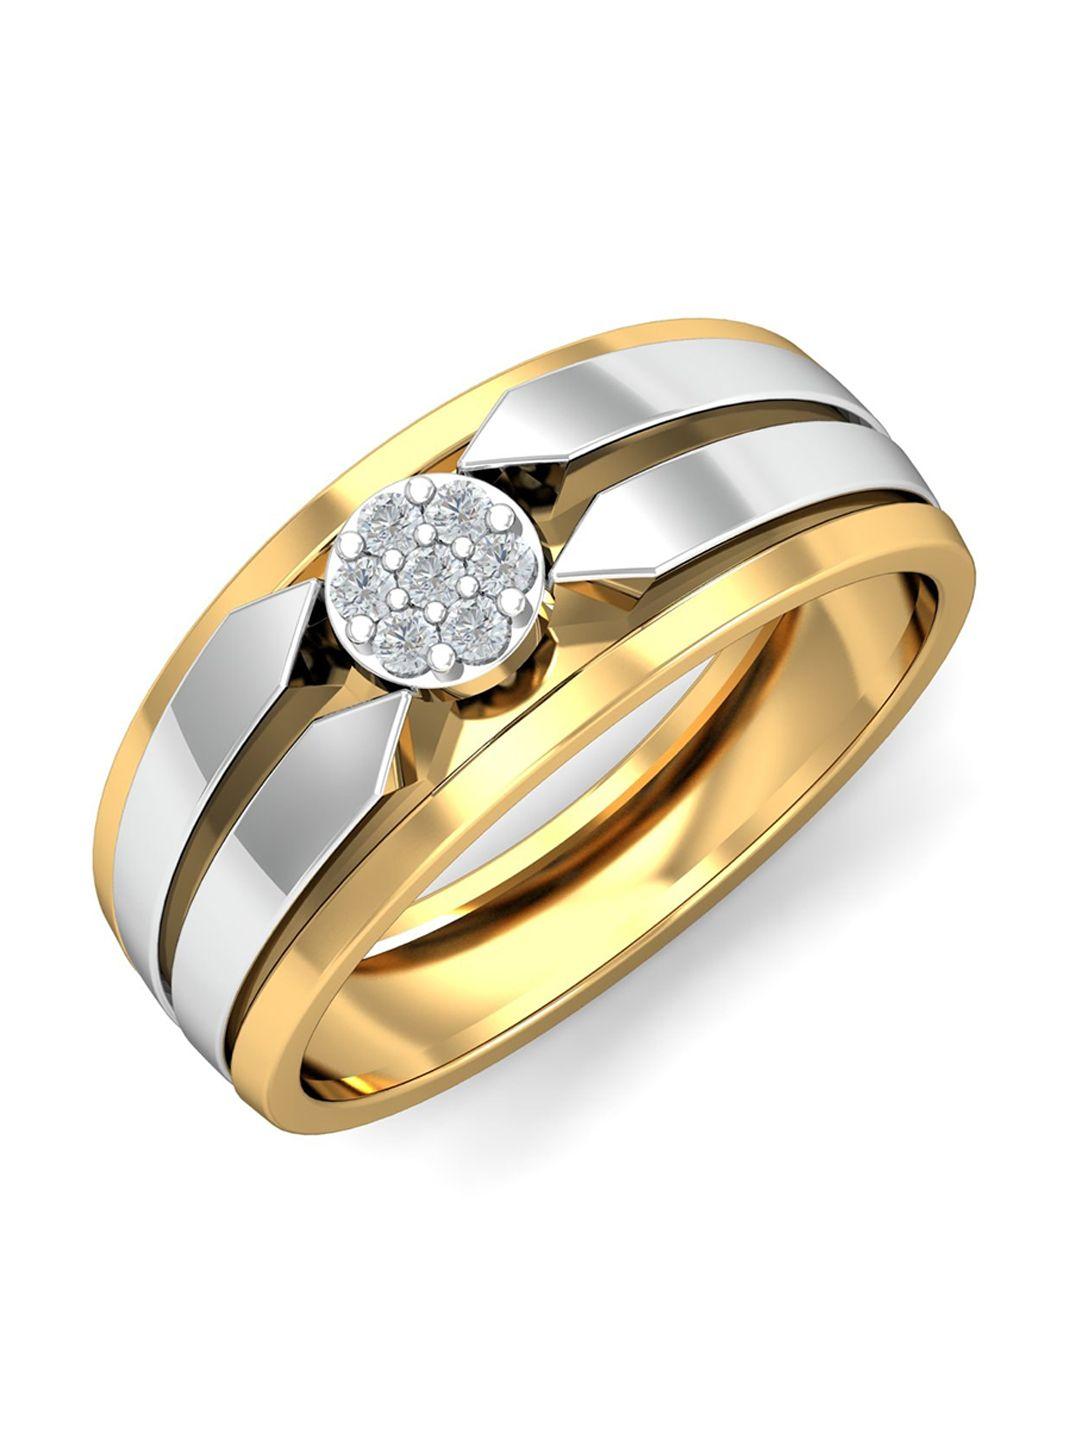 kuberbox men de jure 18kt gold diamond-studded ring- 5.34 gm